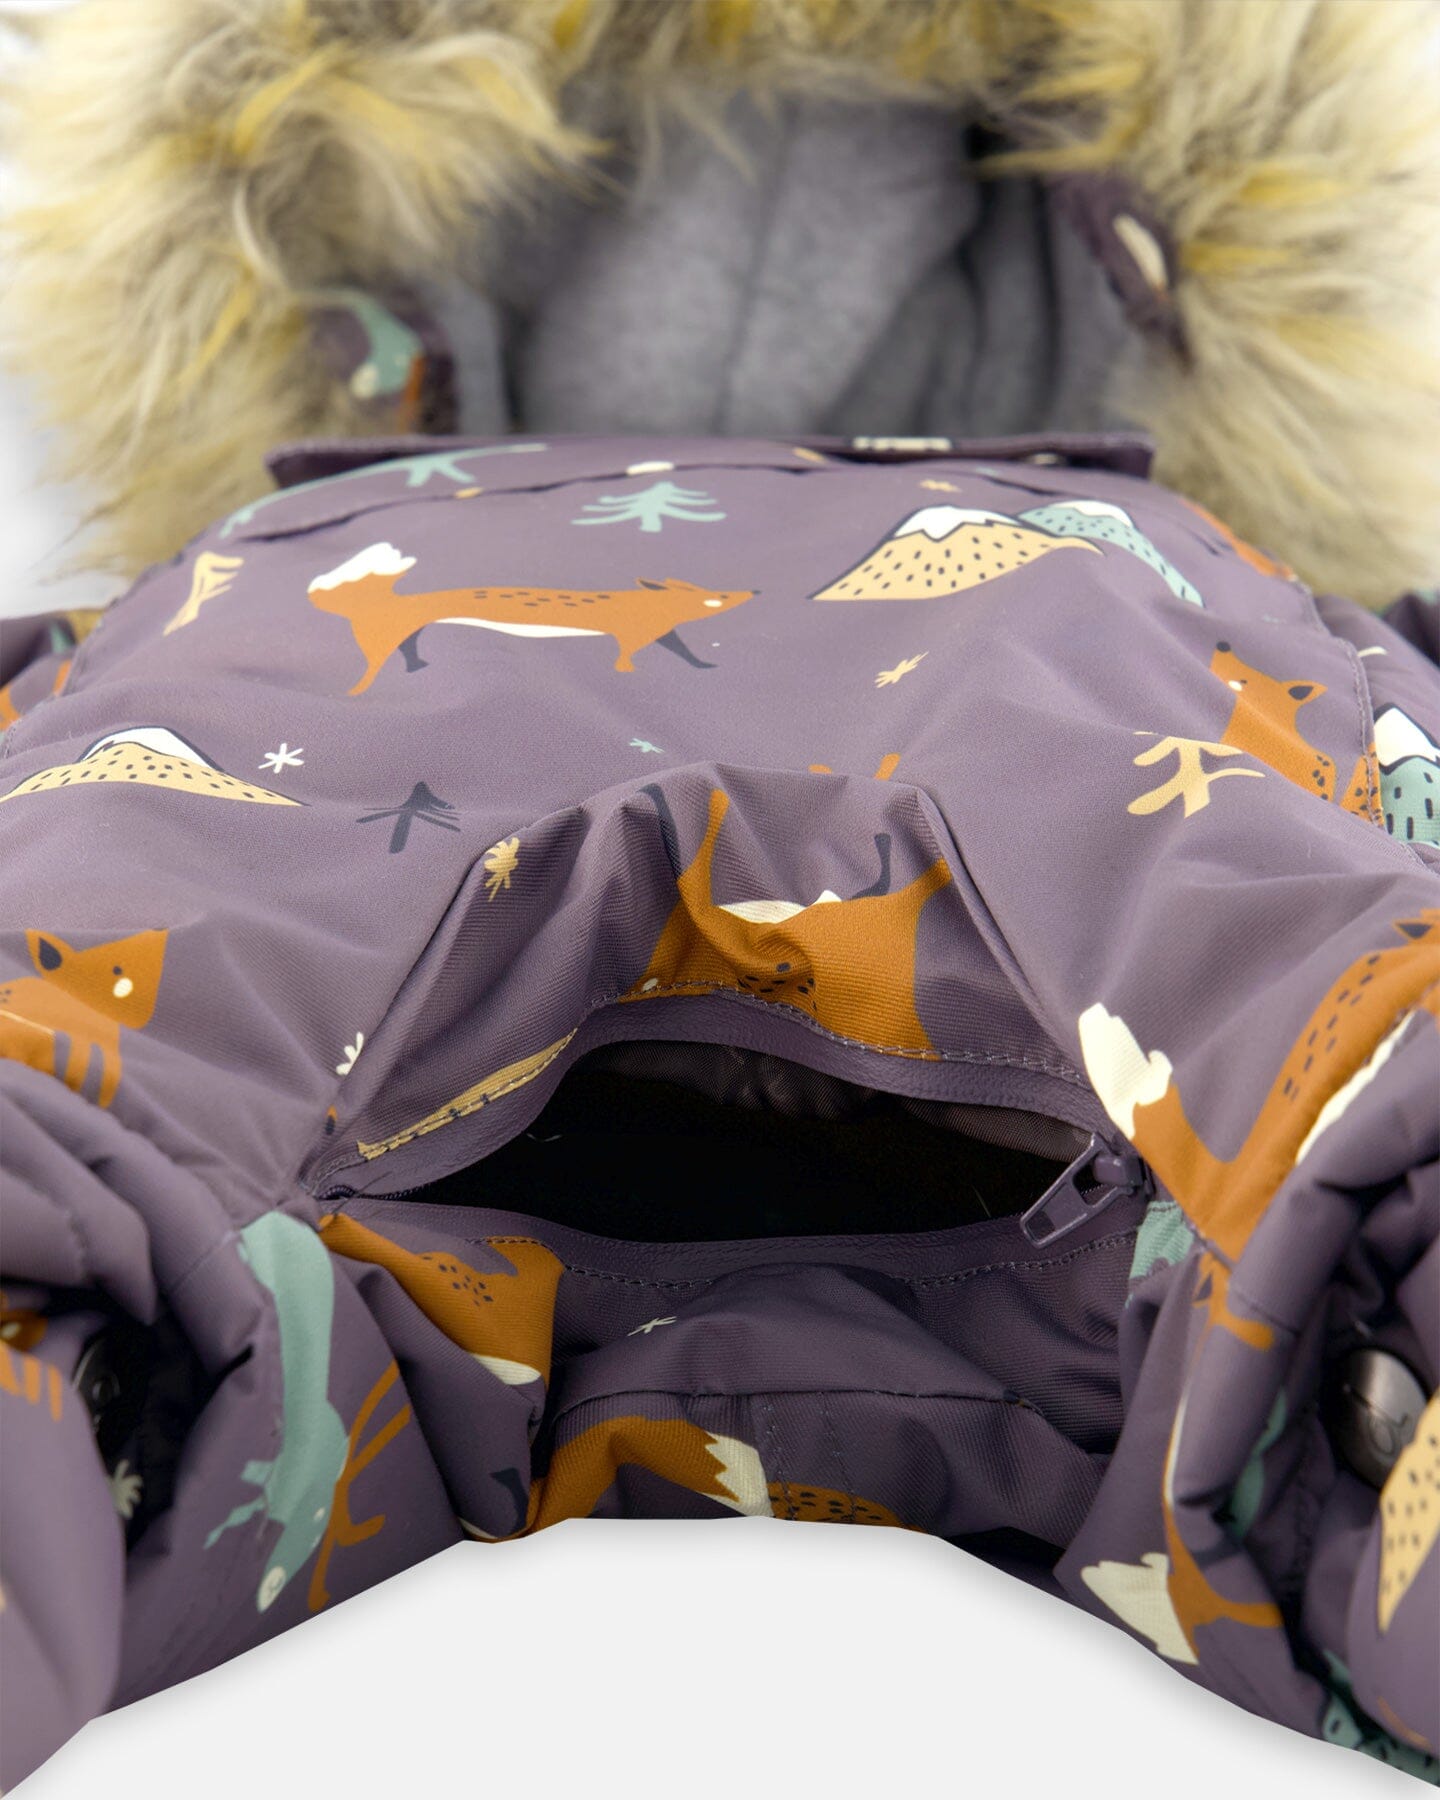 One Piece Baby Car Seat Snowsuit With Fox Print Snowsuits Deux par Deux 